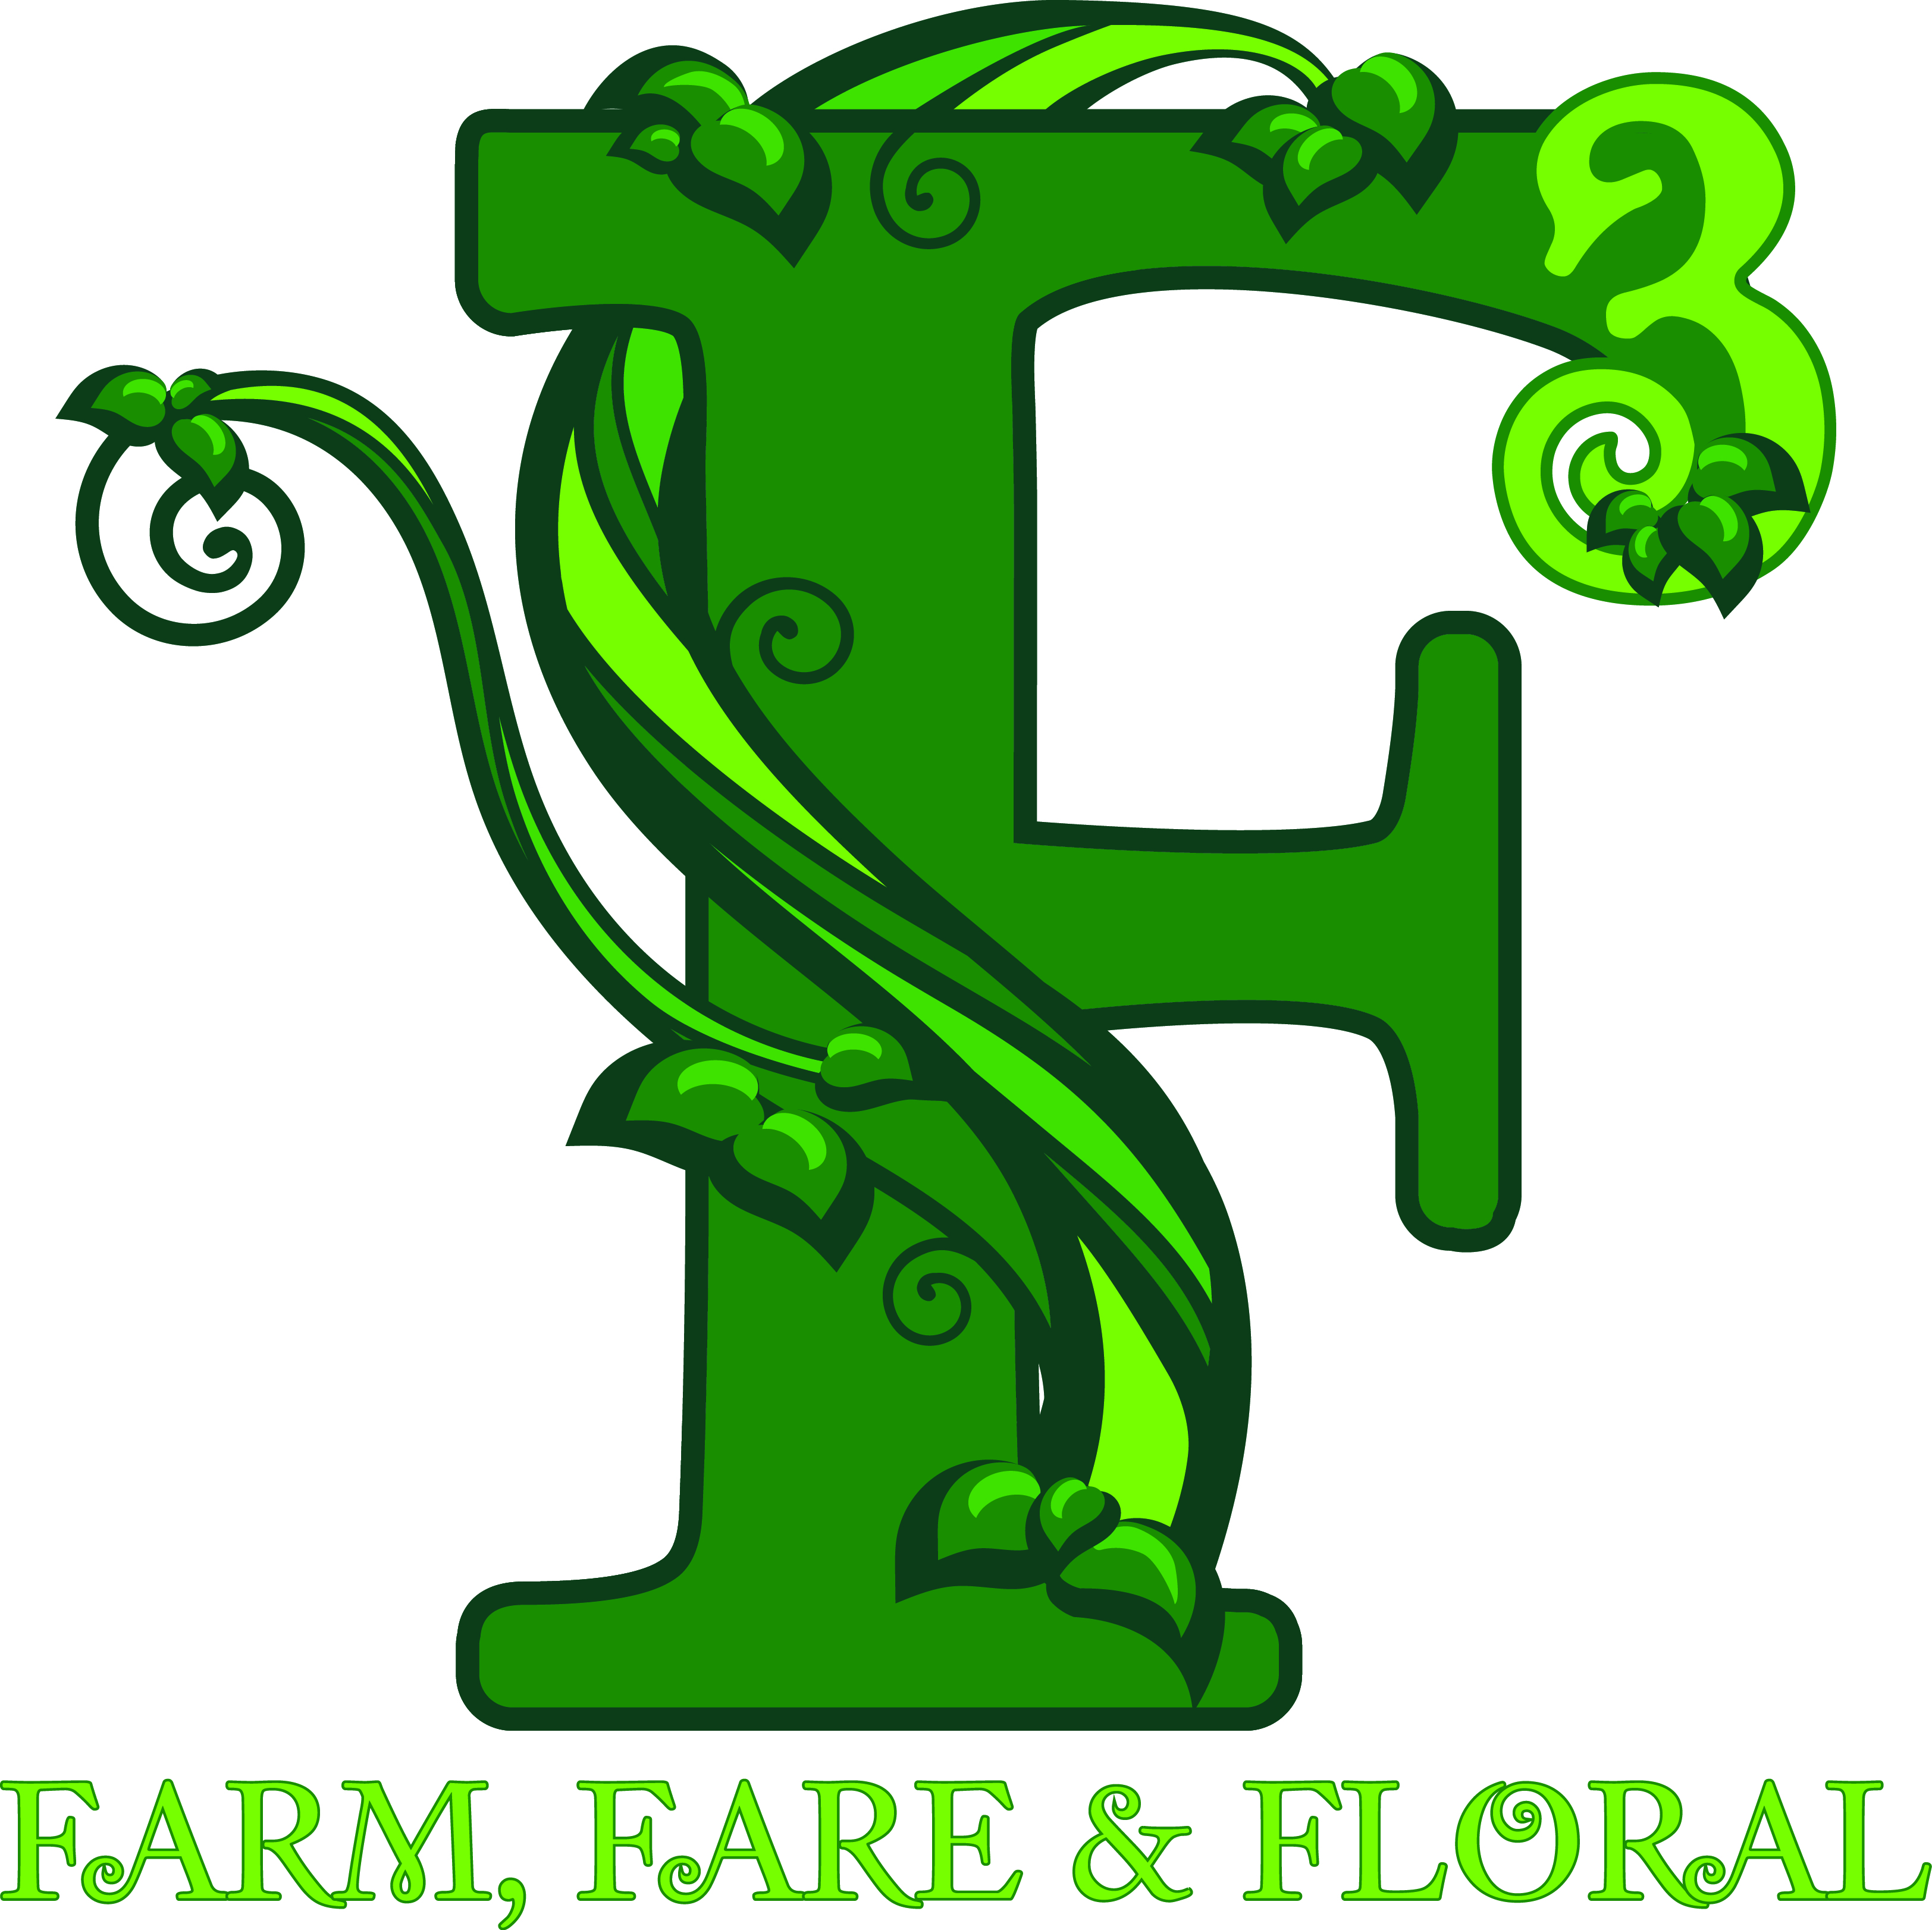 Farm, Fare & Floral